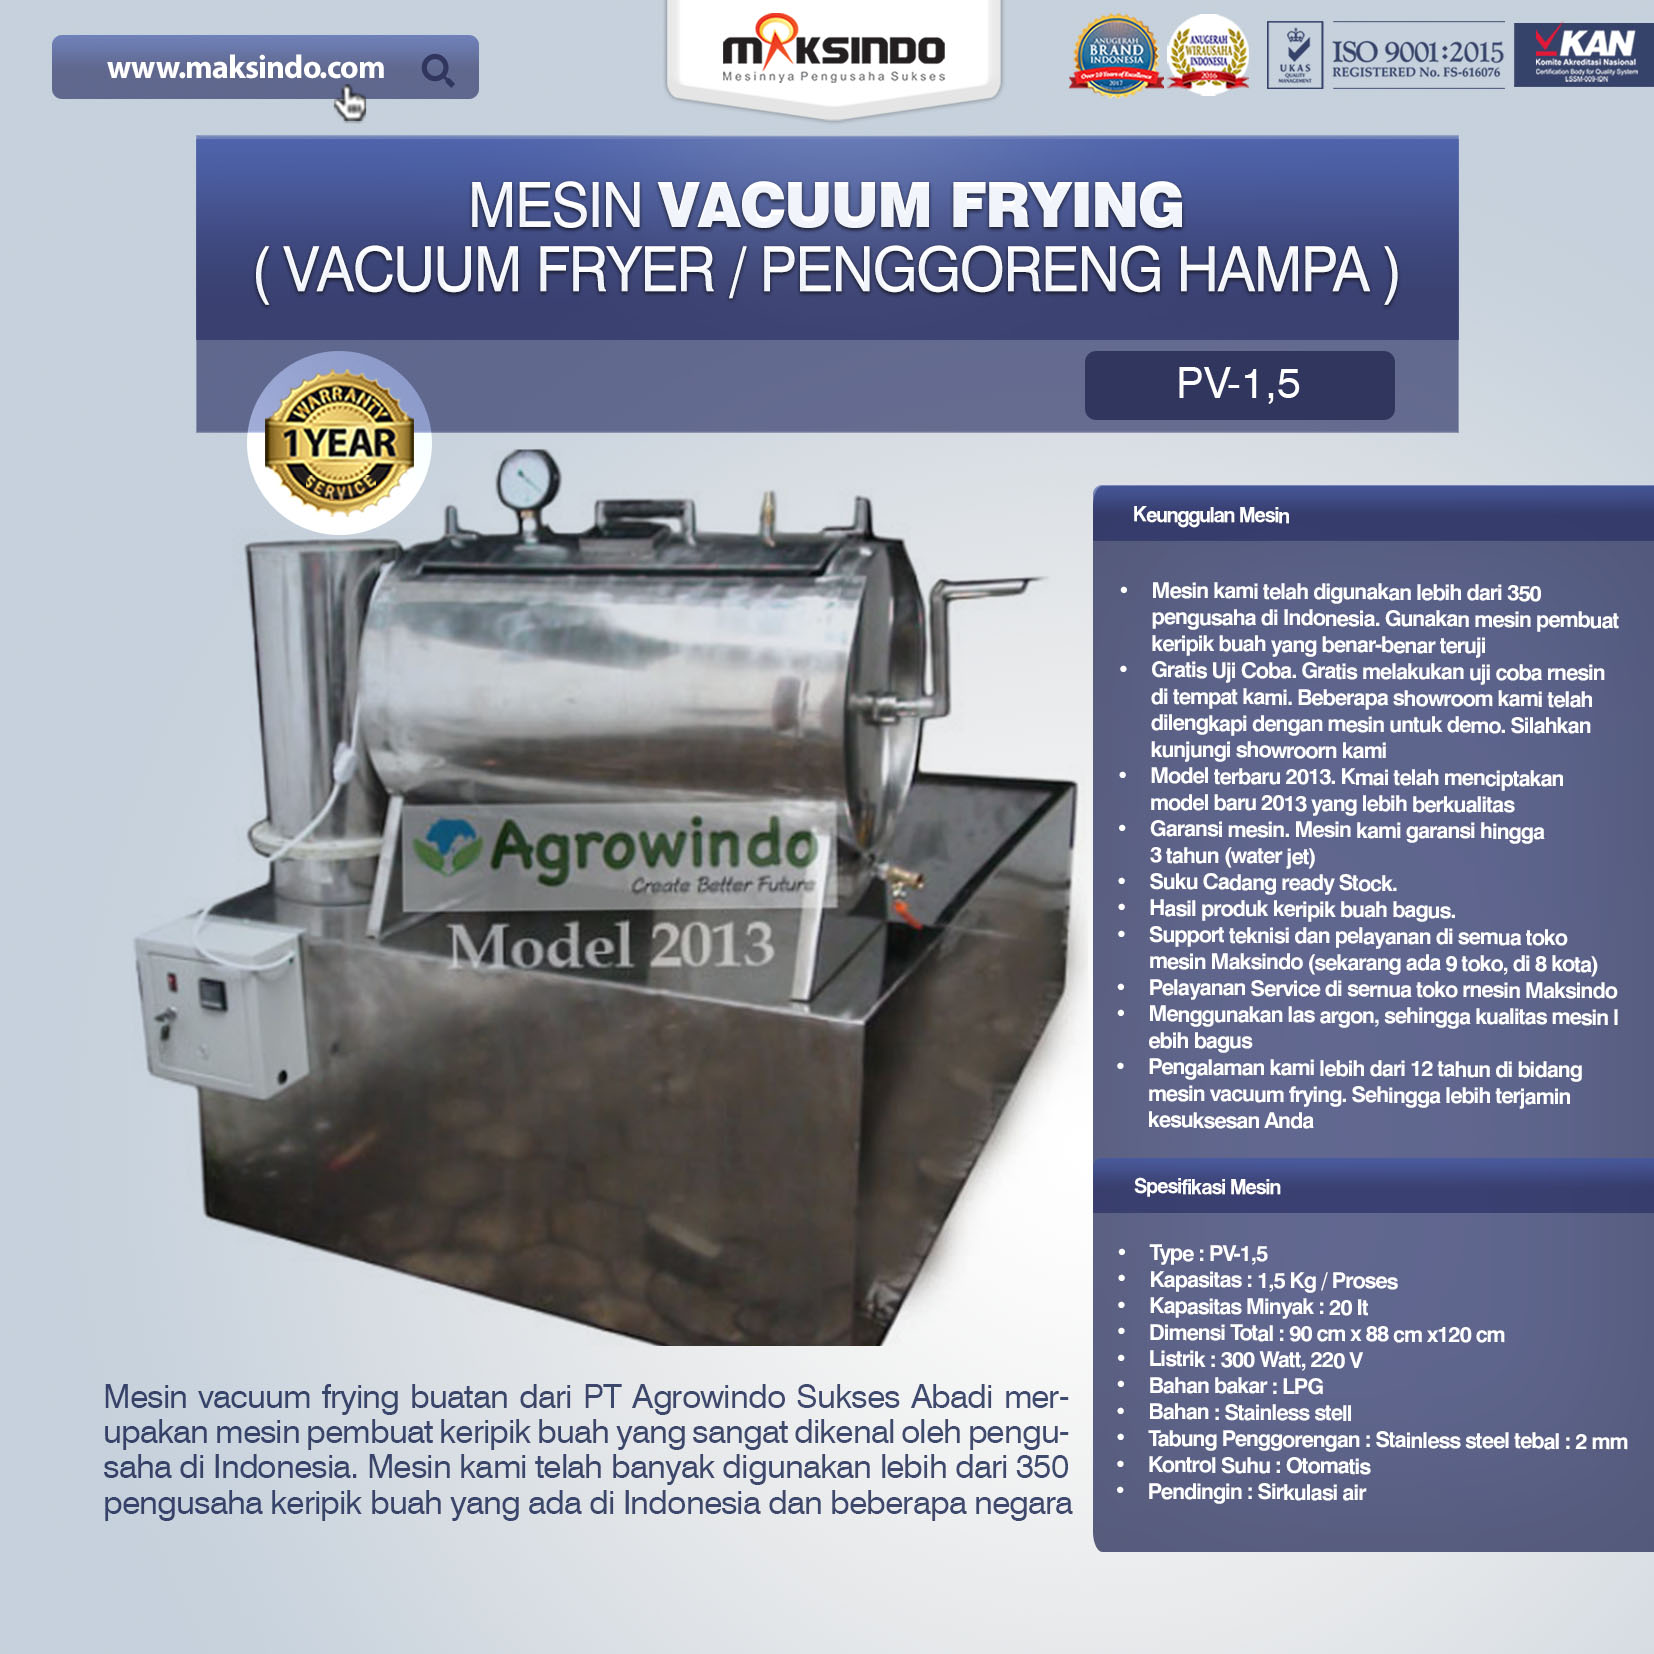 Jual Mesin Vacuum Frying Kapasitas 1.5 kg di Bogor